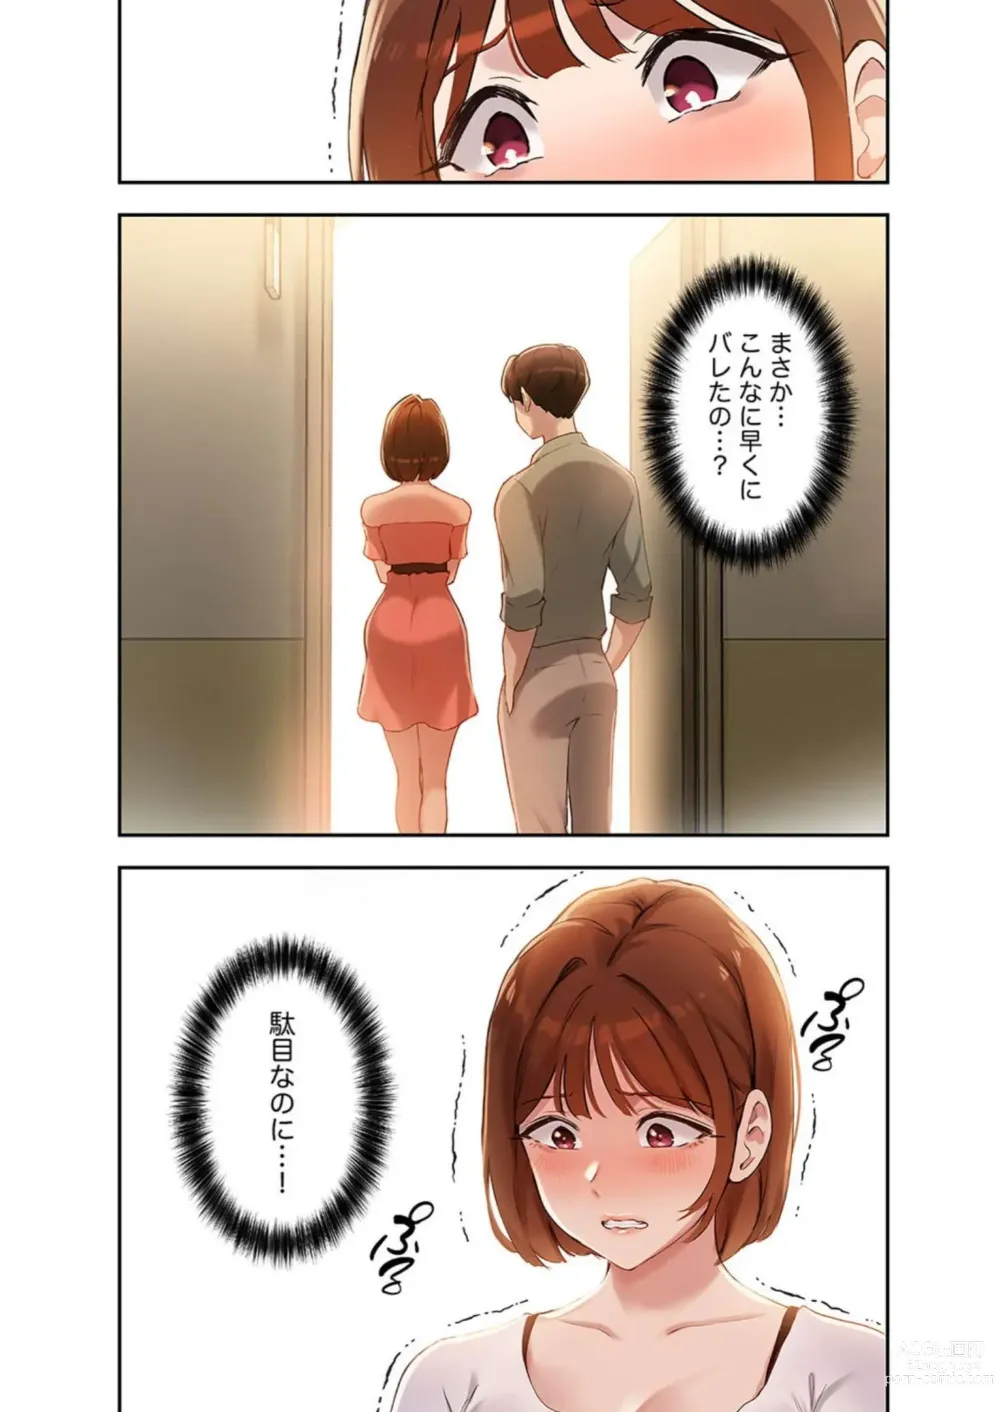 Page 118 of manga Hatachi 02